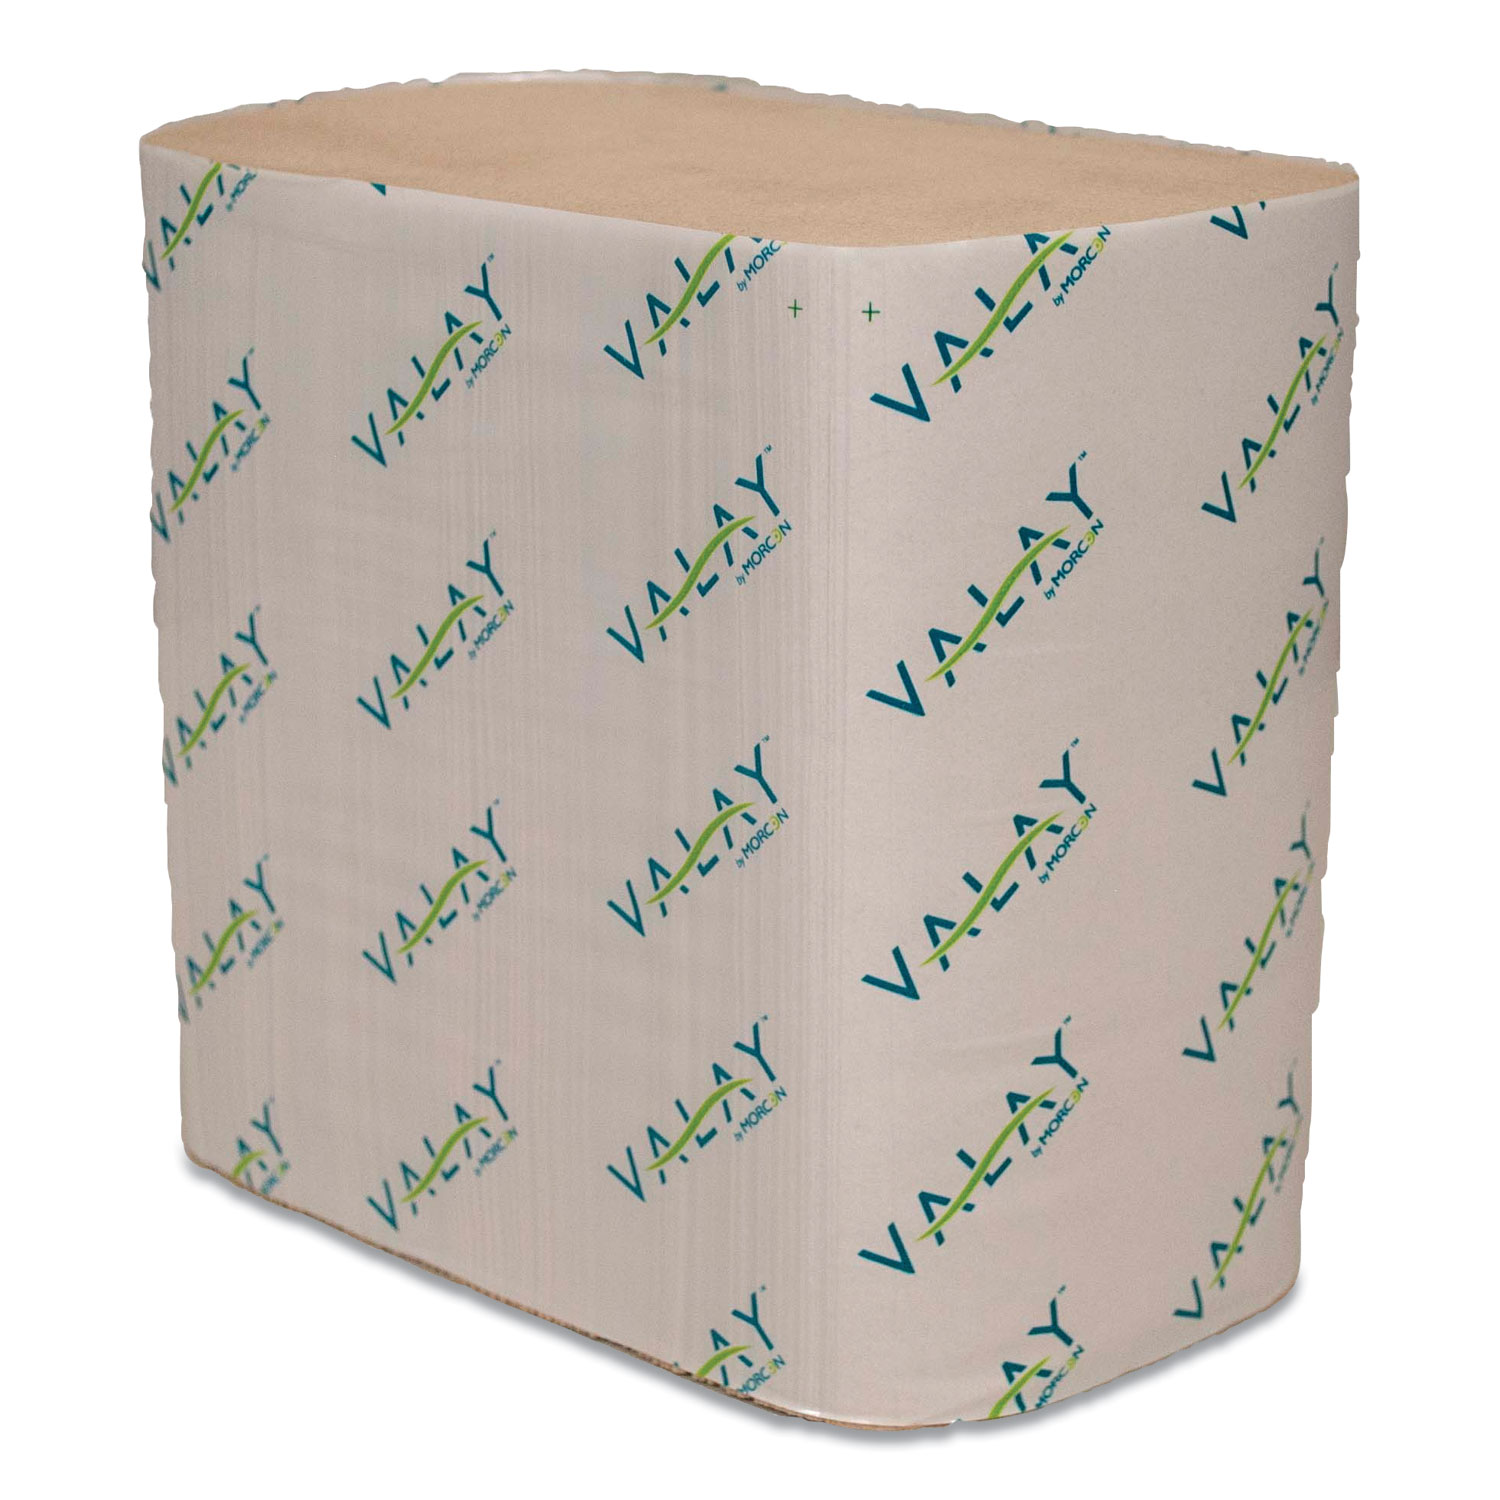  Morcon Tissue 5000VN Valay Interfolded Napkins, 2-Ply, 6.5 x 8.25, Kraft, 6,000/Carton (MOR5000VN) 